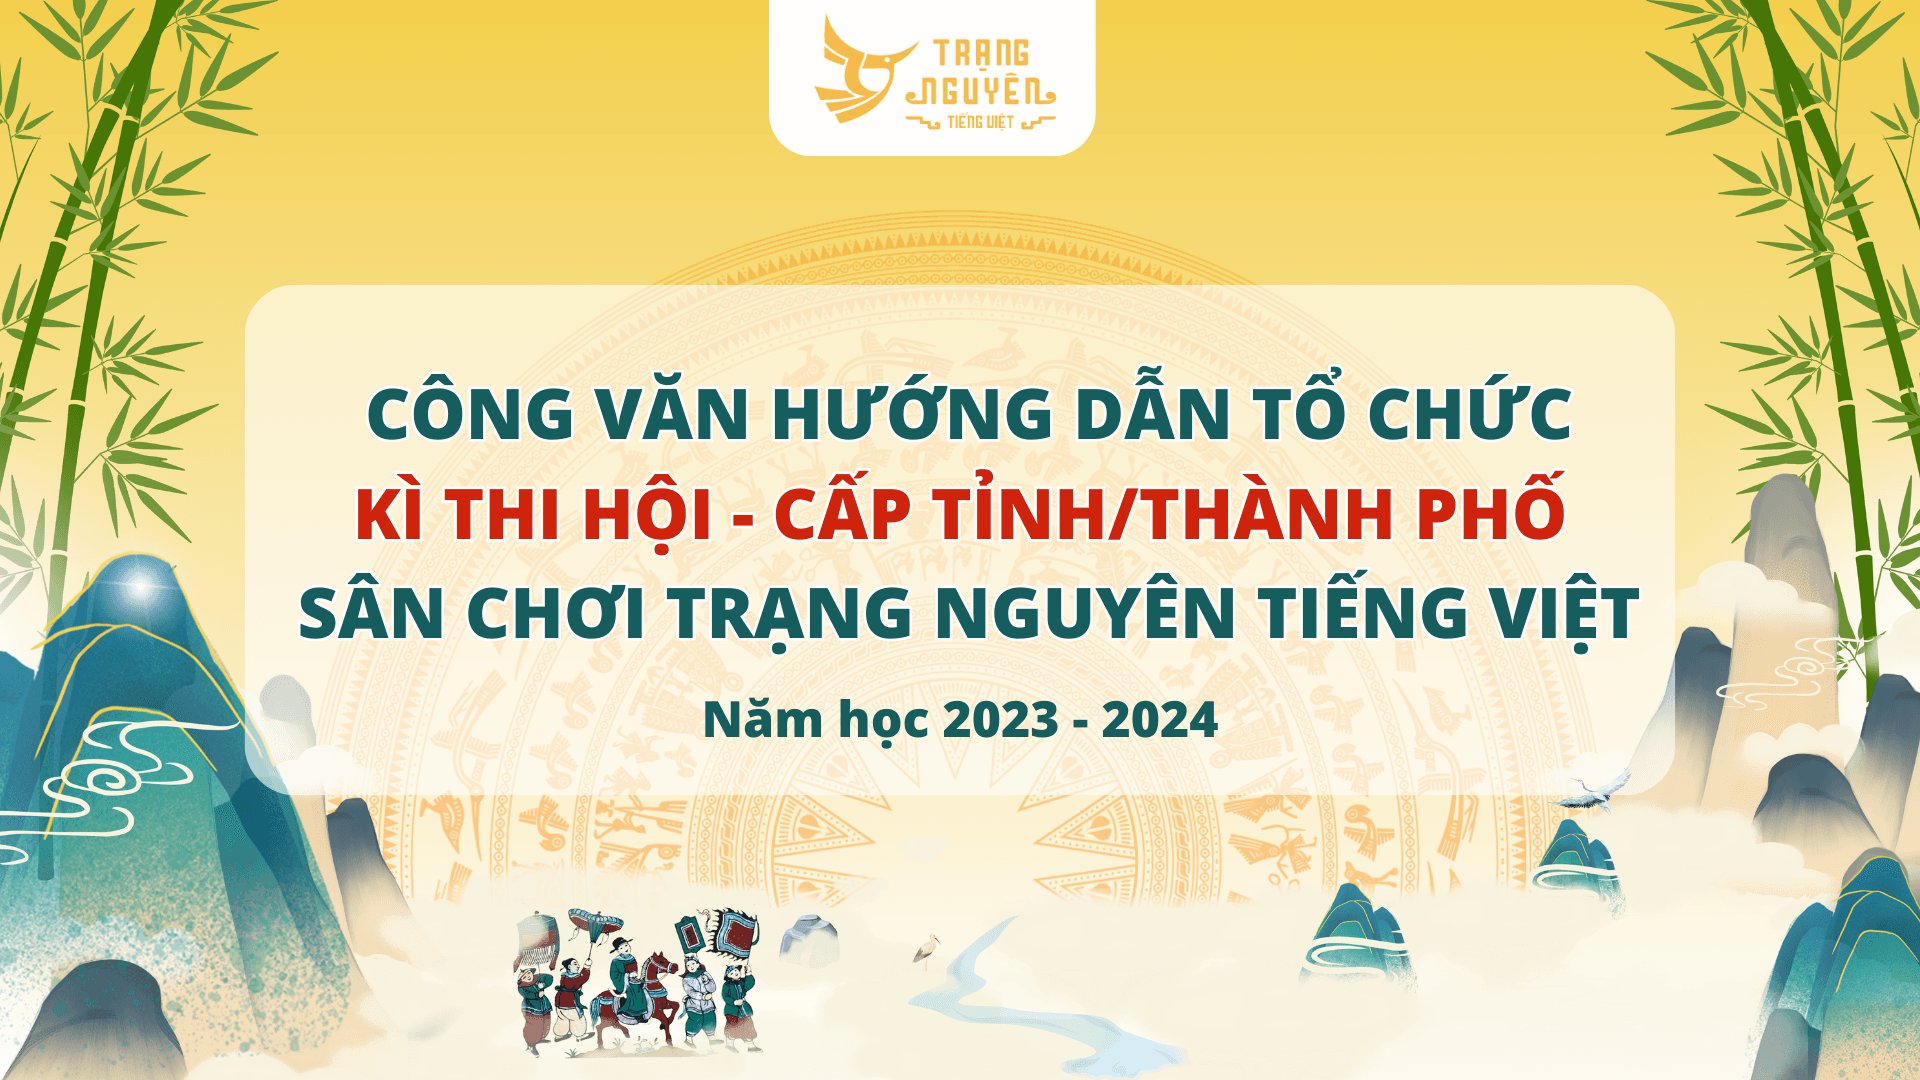 cong-van-huong-dan-to-chuc-ki-thi-hoi-cap-tinh-thanh-pho-nam-hoc-2023-2024